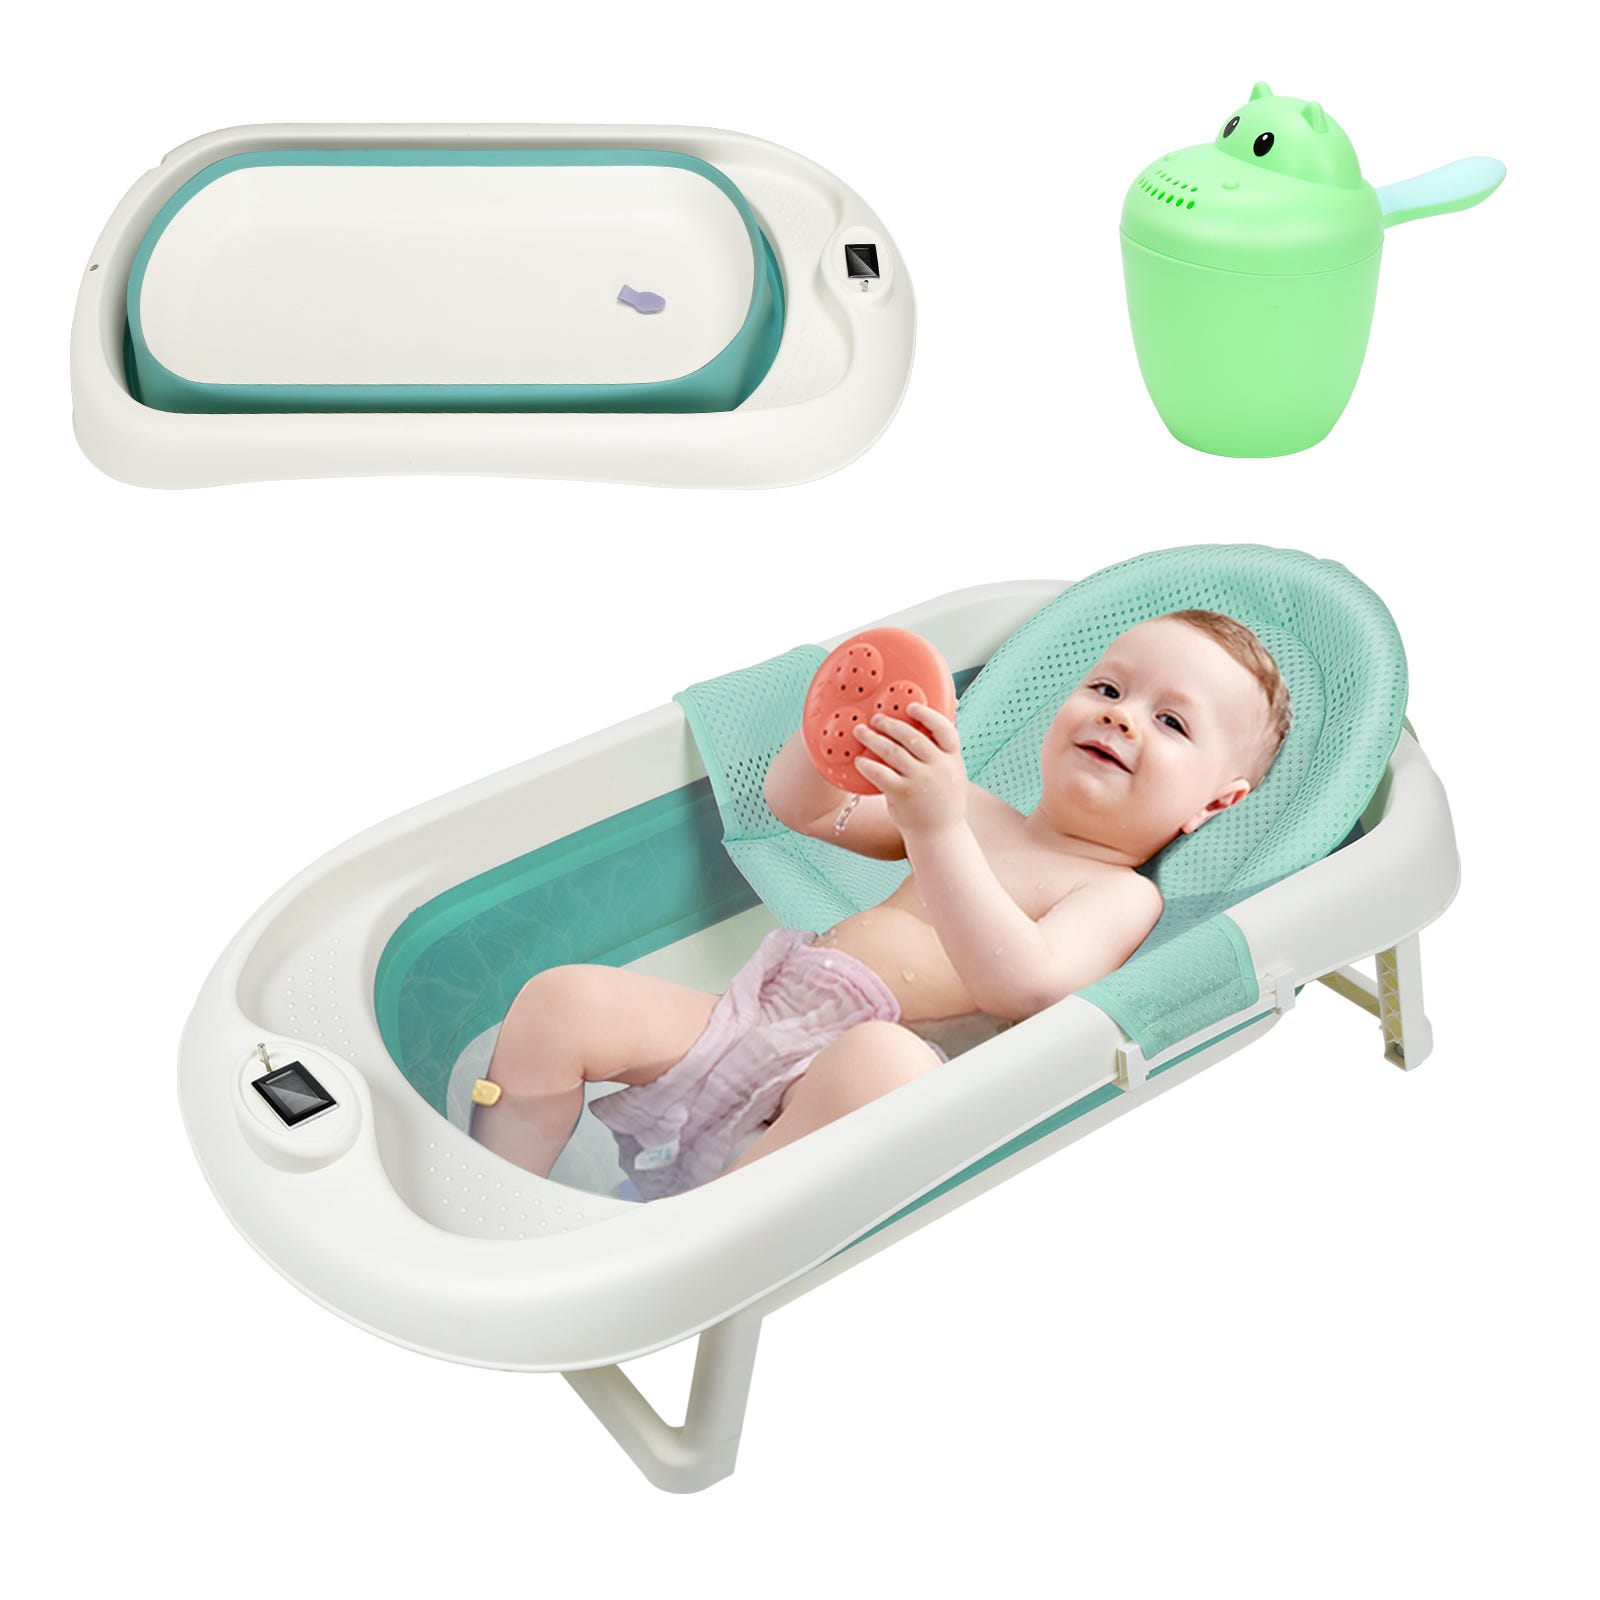 Baignoire bébé - 3 astuces pour booster l'éveil de bébé